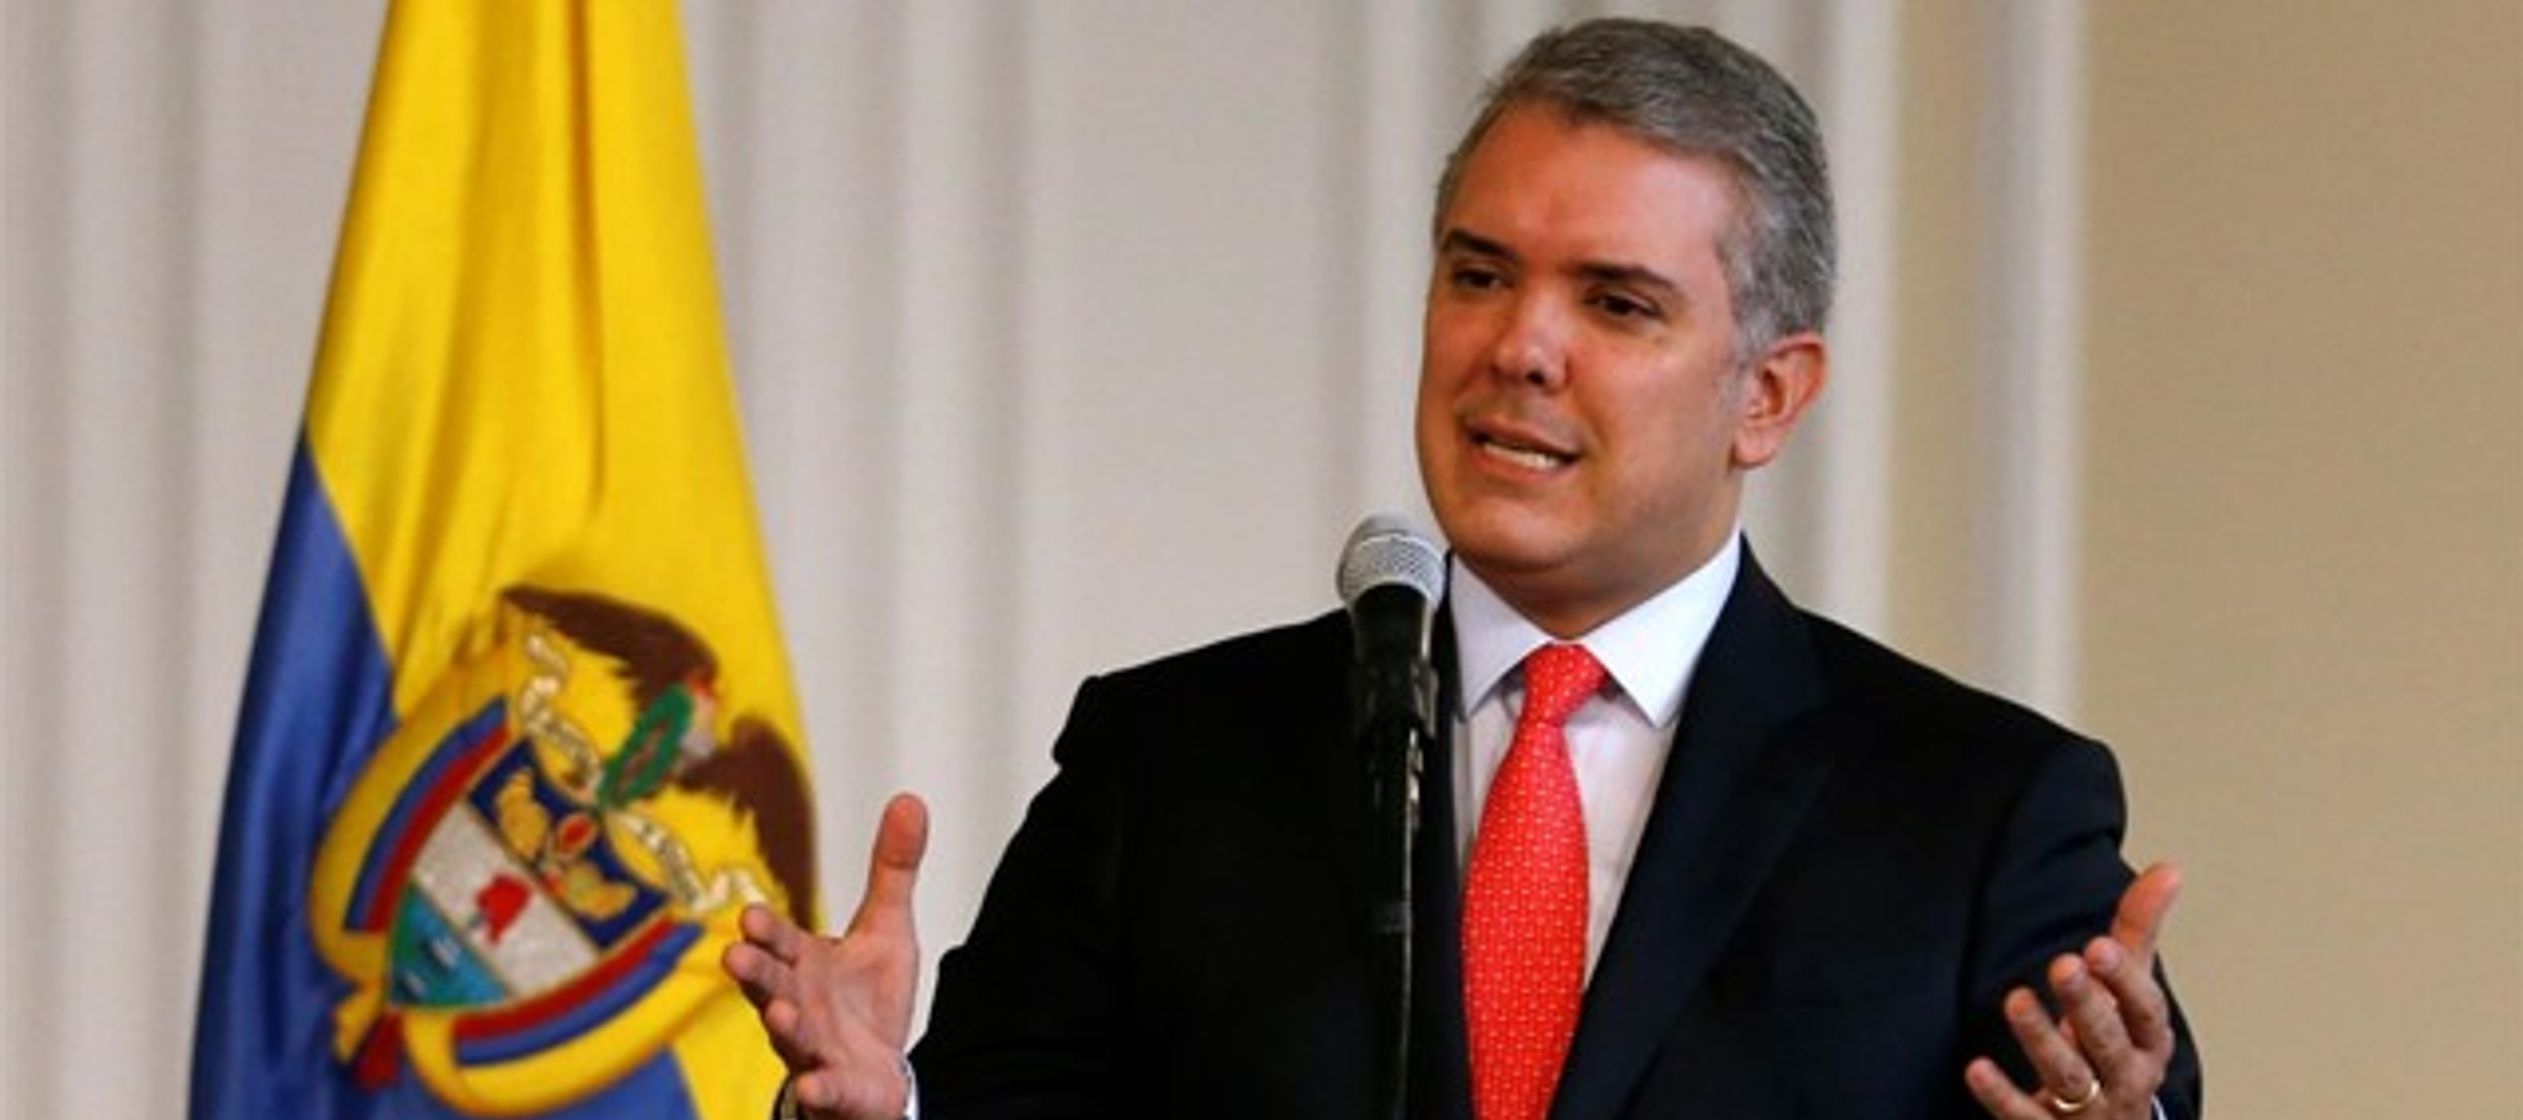 El ex presidente Álvaro Uribe le ha descrito como "un gladiador de la democracia y de...